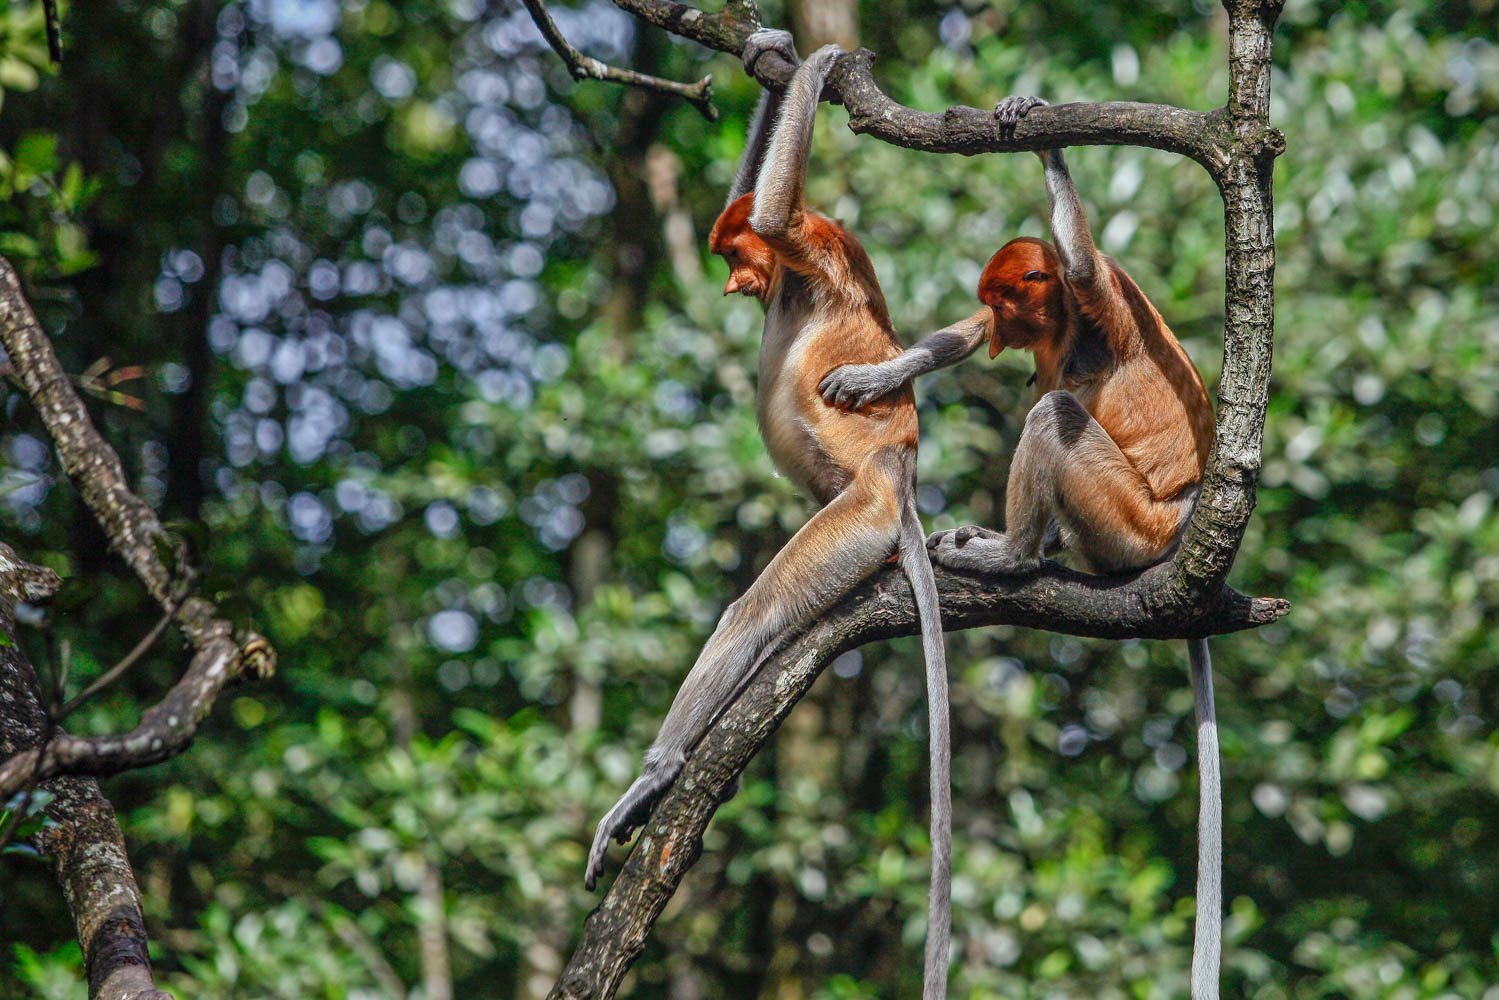 Dua ekor bekantan (Nasalis larvatus) terlihat di Kawasan Konservasi Mangrove dan Bekantan, Tarakan, Kalimantan Utara. Di KKMB, bekantan hidup secara berkelompok dengan jumlah populasi sekitar 45 ekor. Primata tersebut juga memliki sifat yang berbeda dengan jenis primata lainnya. Bekantan bukan termasuk monyet yang agresif sehingga membuat wisatawan yang berkunjung di kawasan itu merasa nyaman untuk melihatnya langsung di habitatnya.